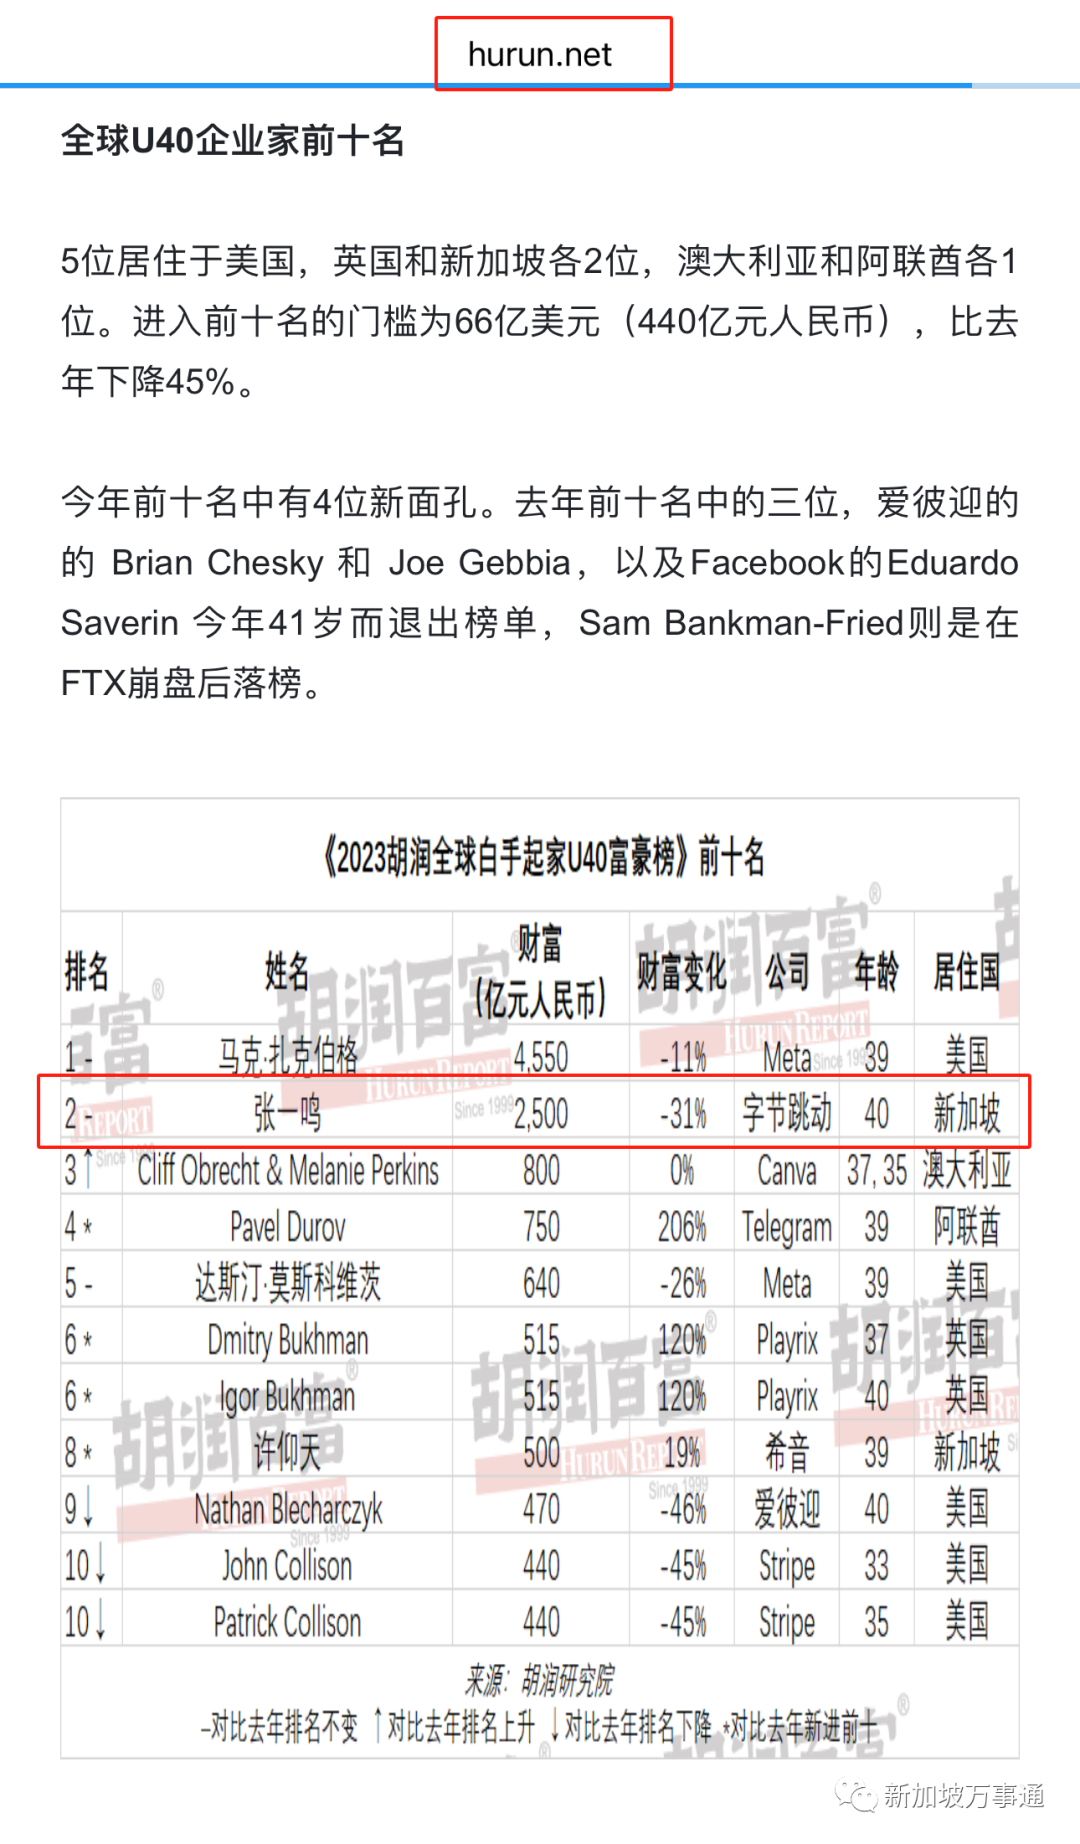 在胡润富豪榜单上显示他的居住国已经变成了新加坡